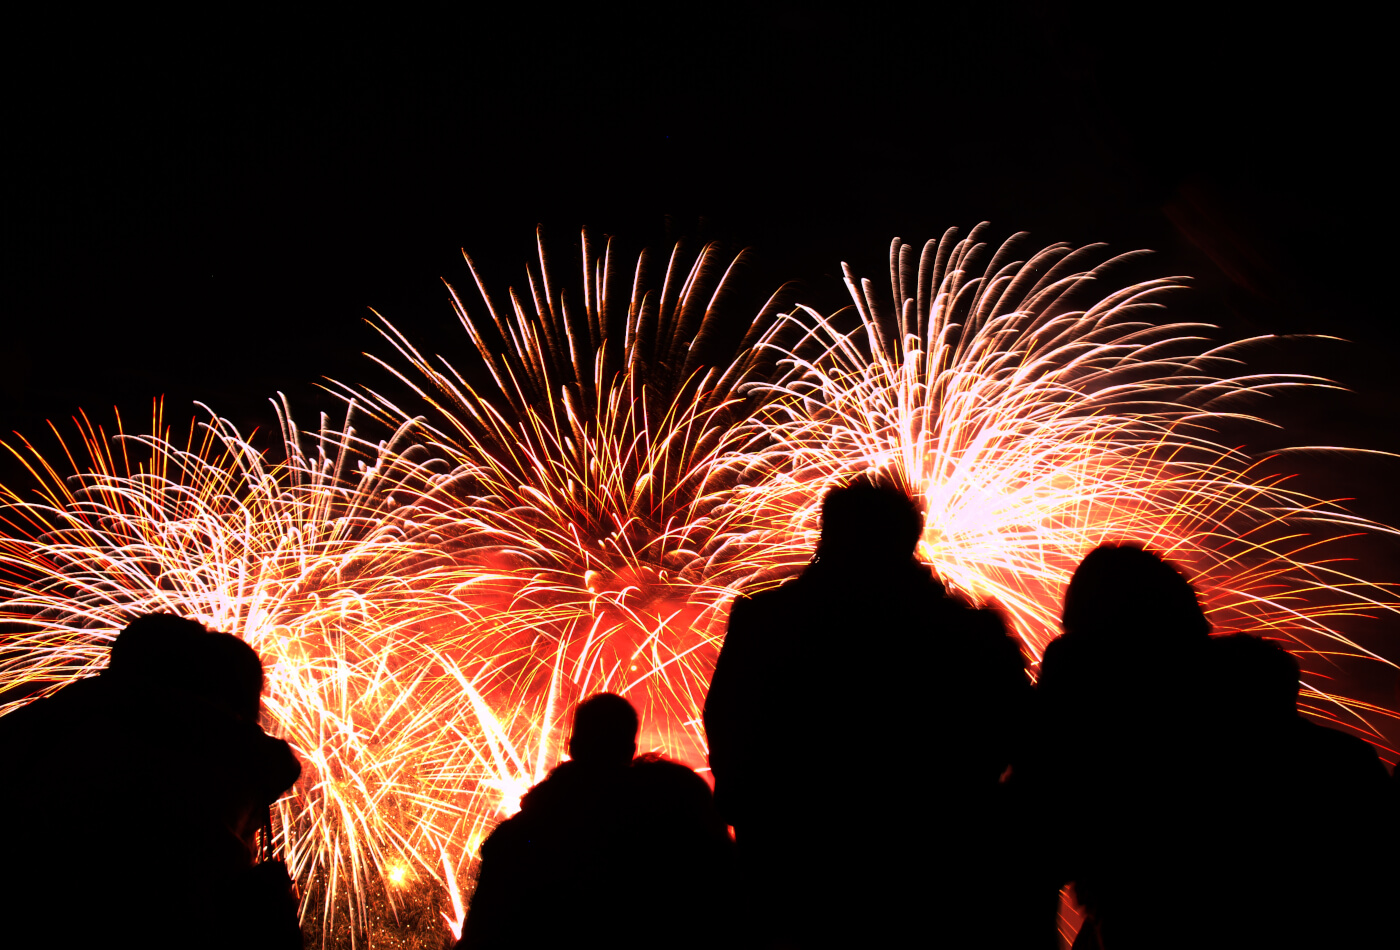 Figures stood in front of Lyme Regis fireworks